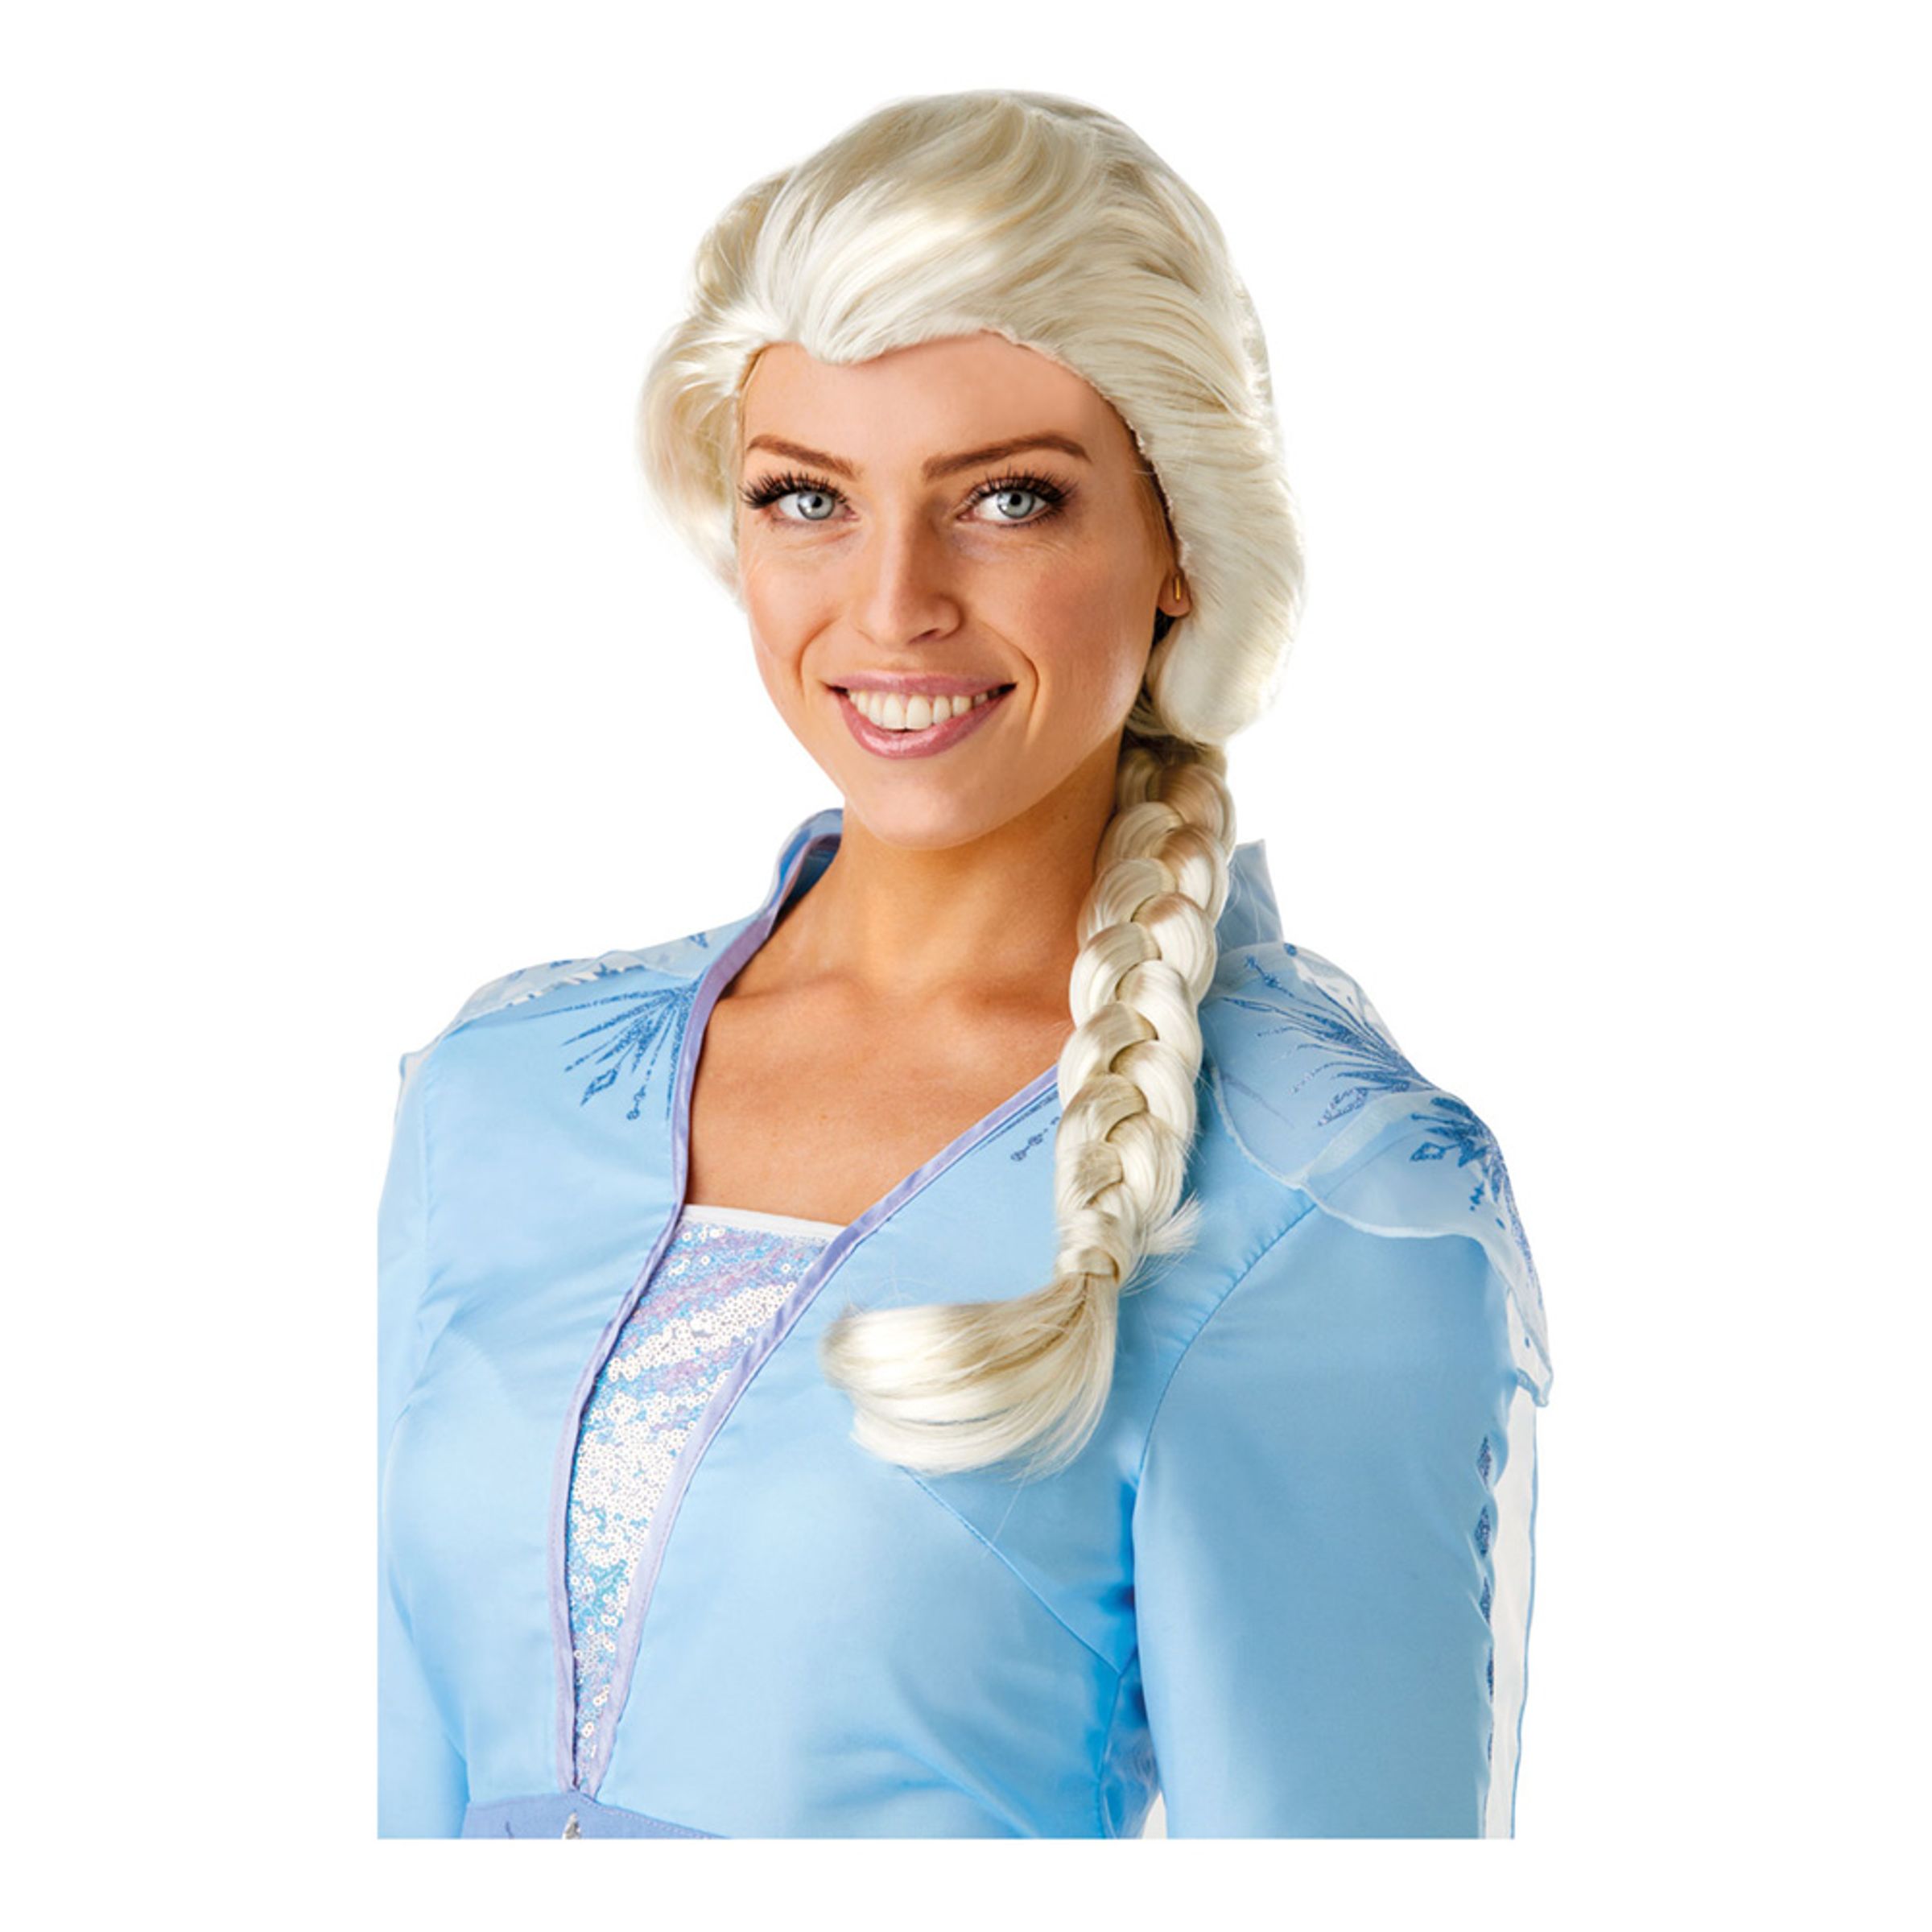 Frozen 2 Elsa Peruk - One size